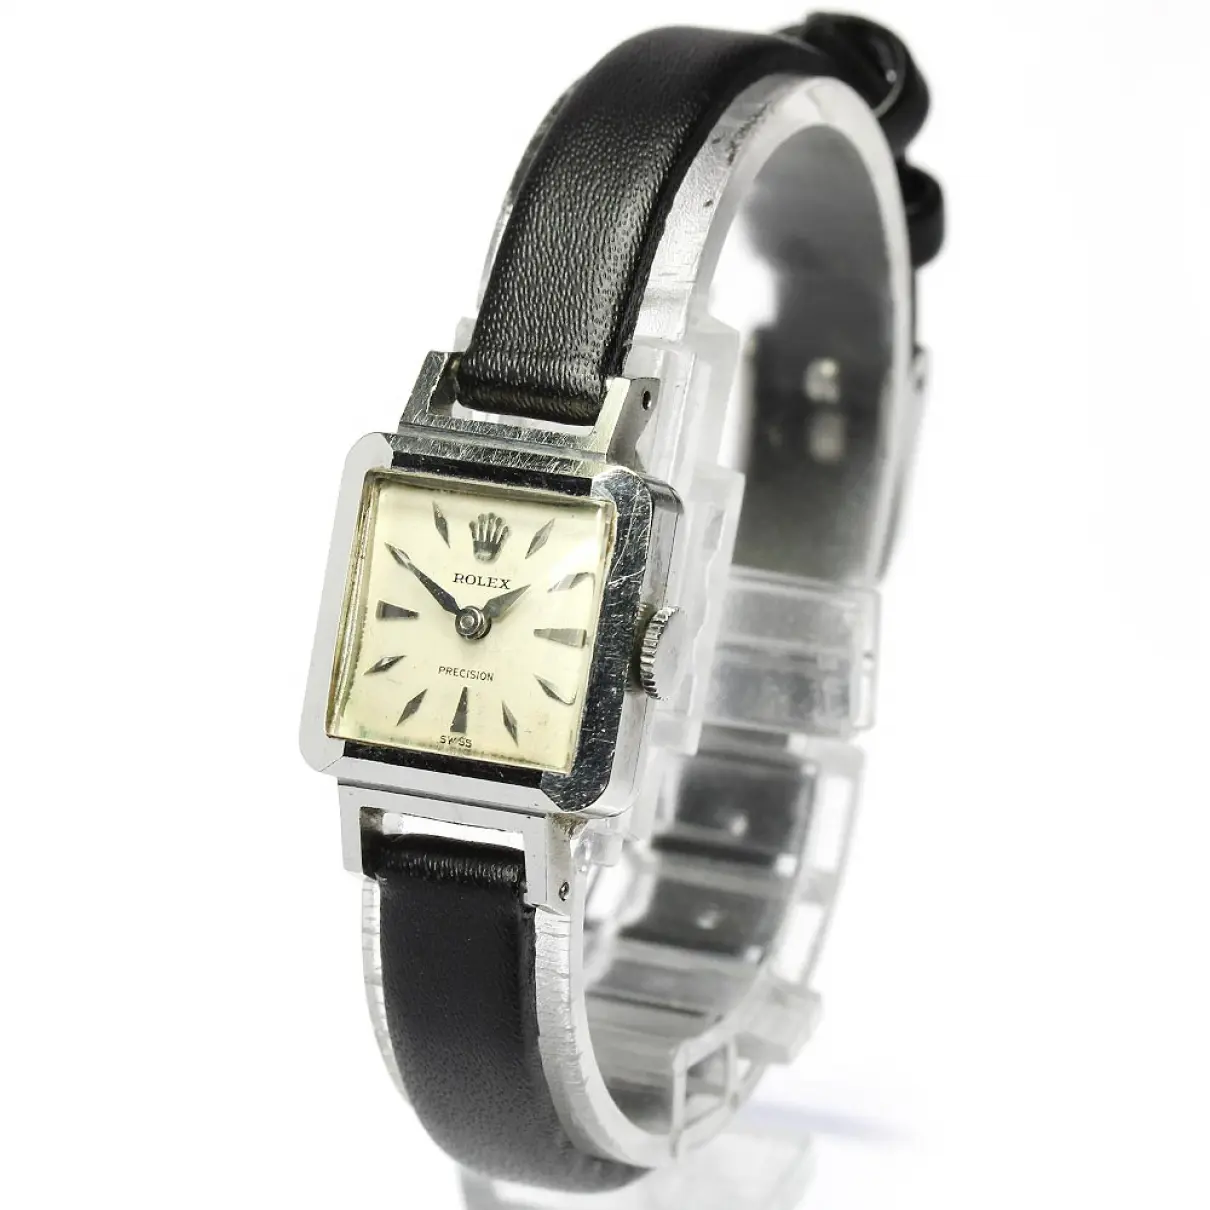 Buy Rolex Watch online